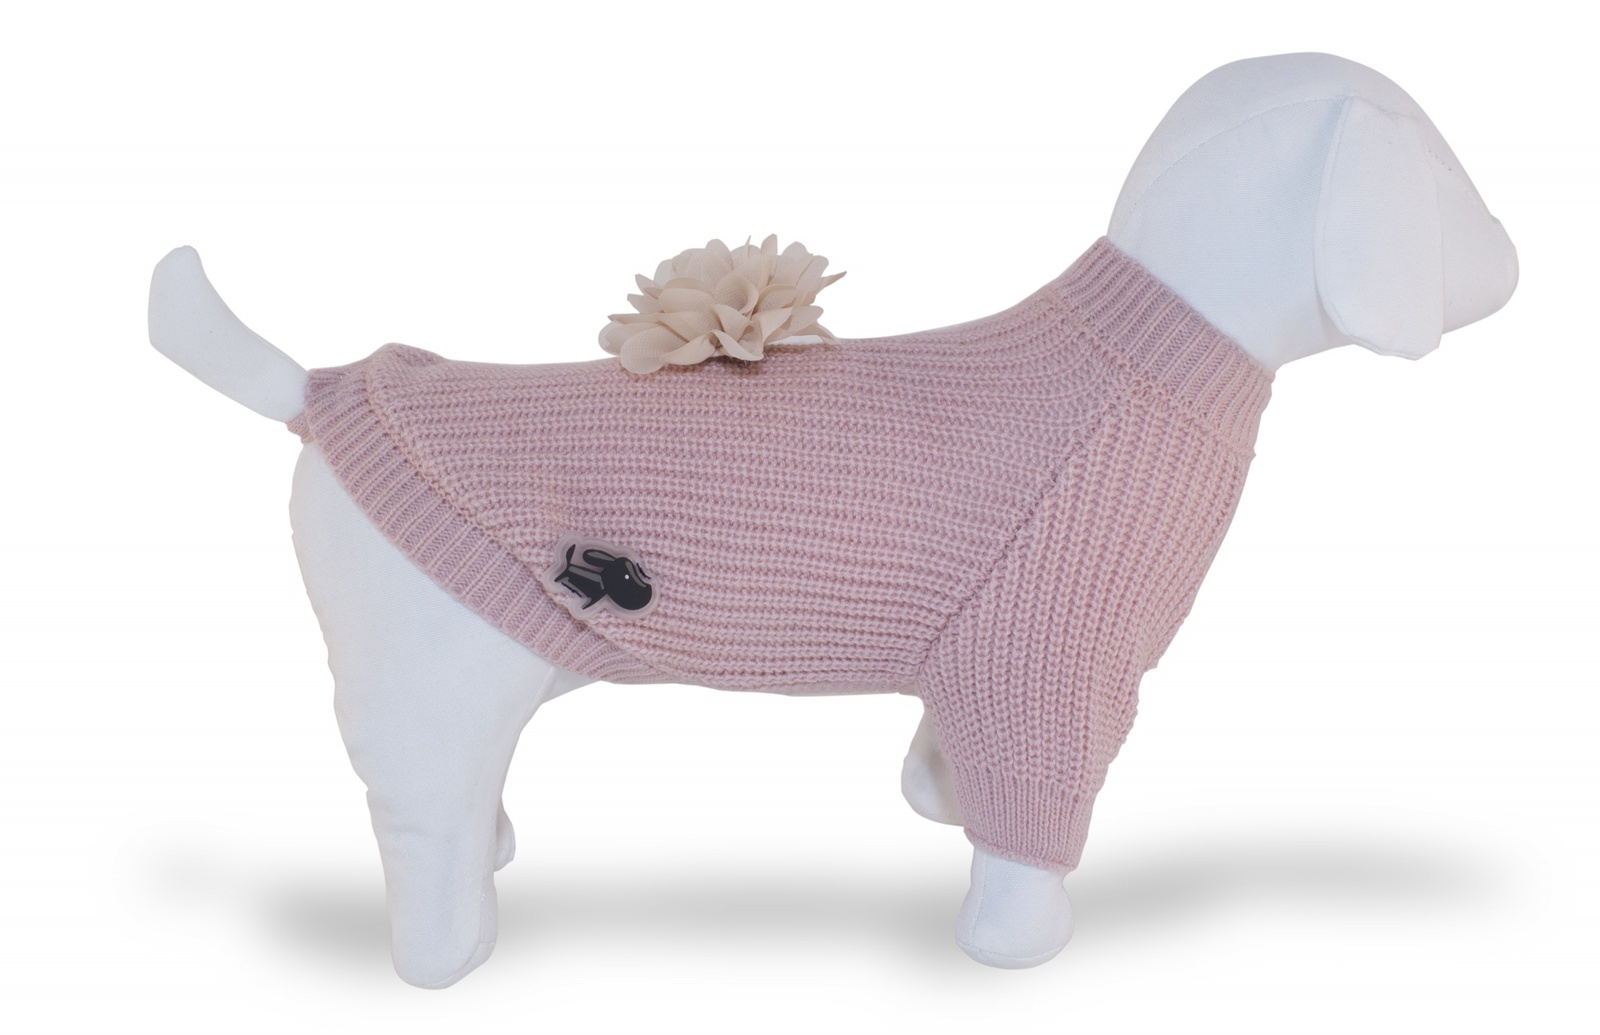 Ferribiella одежда Ferribiella одежда свитер Дольче Вита, розовый (20 см) ferribiella одежда ferribiella одежда свитер париж розовый 15 см